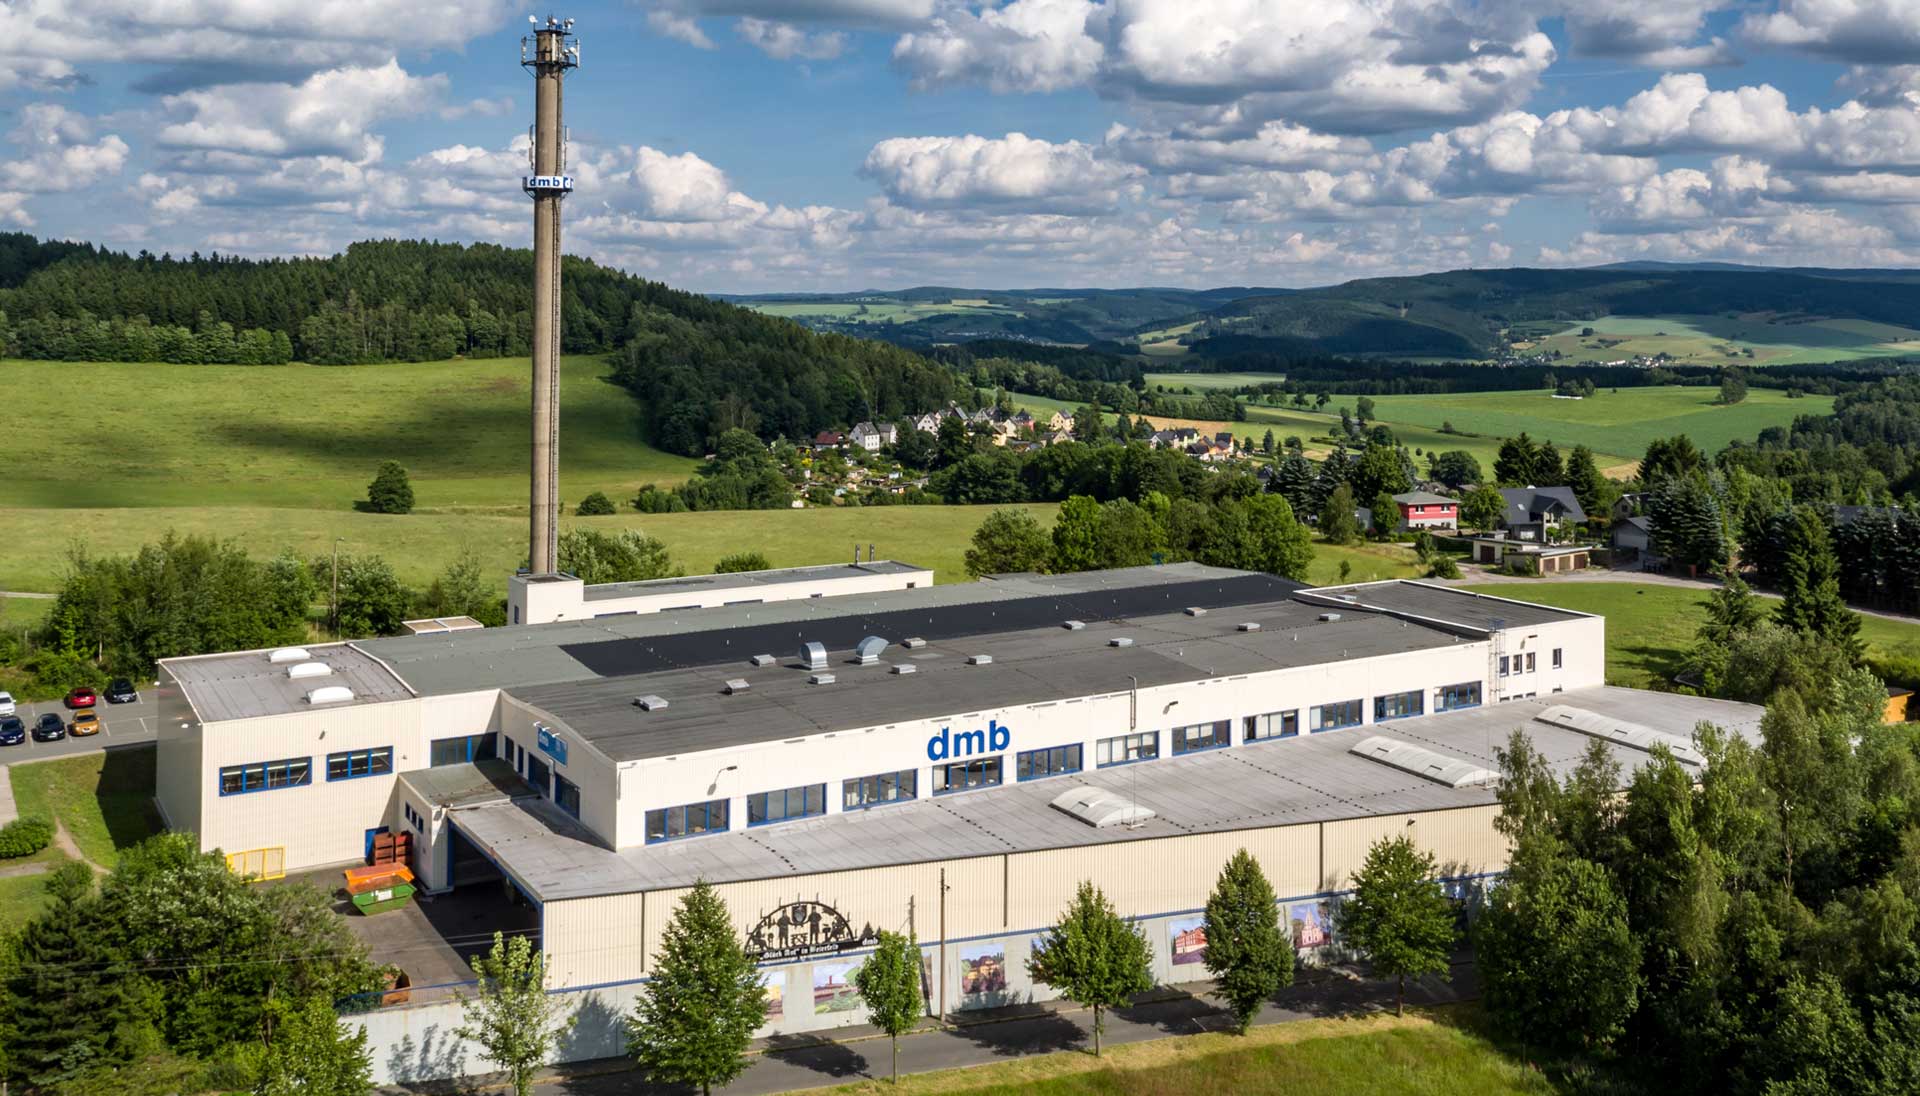 DMB Metallverarbeitung GmbH